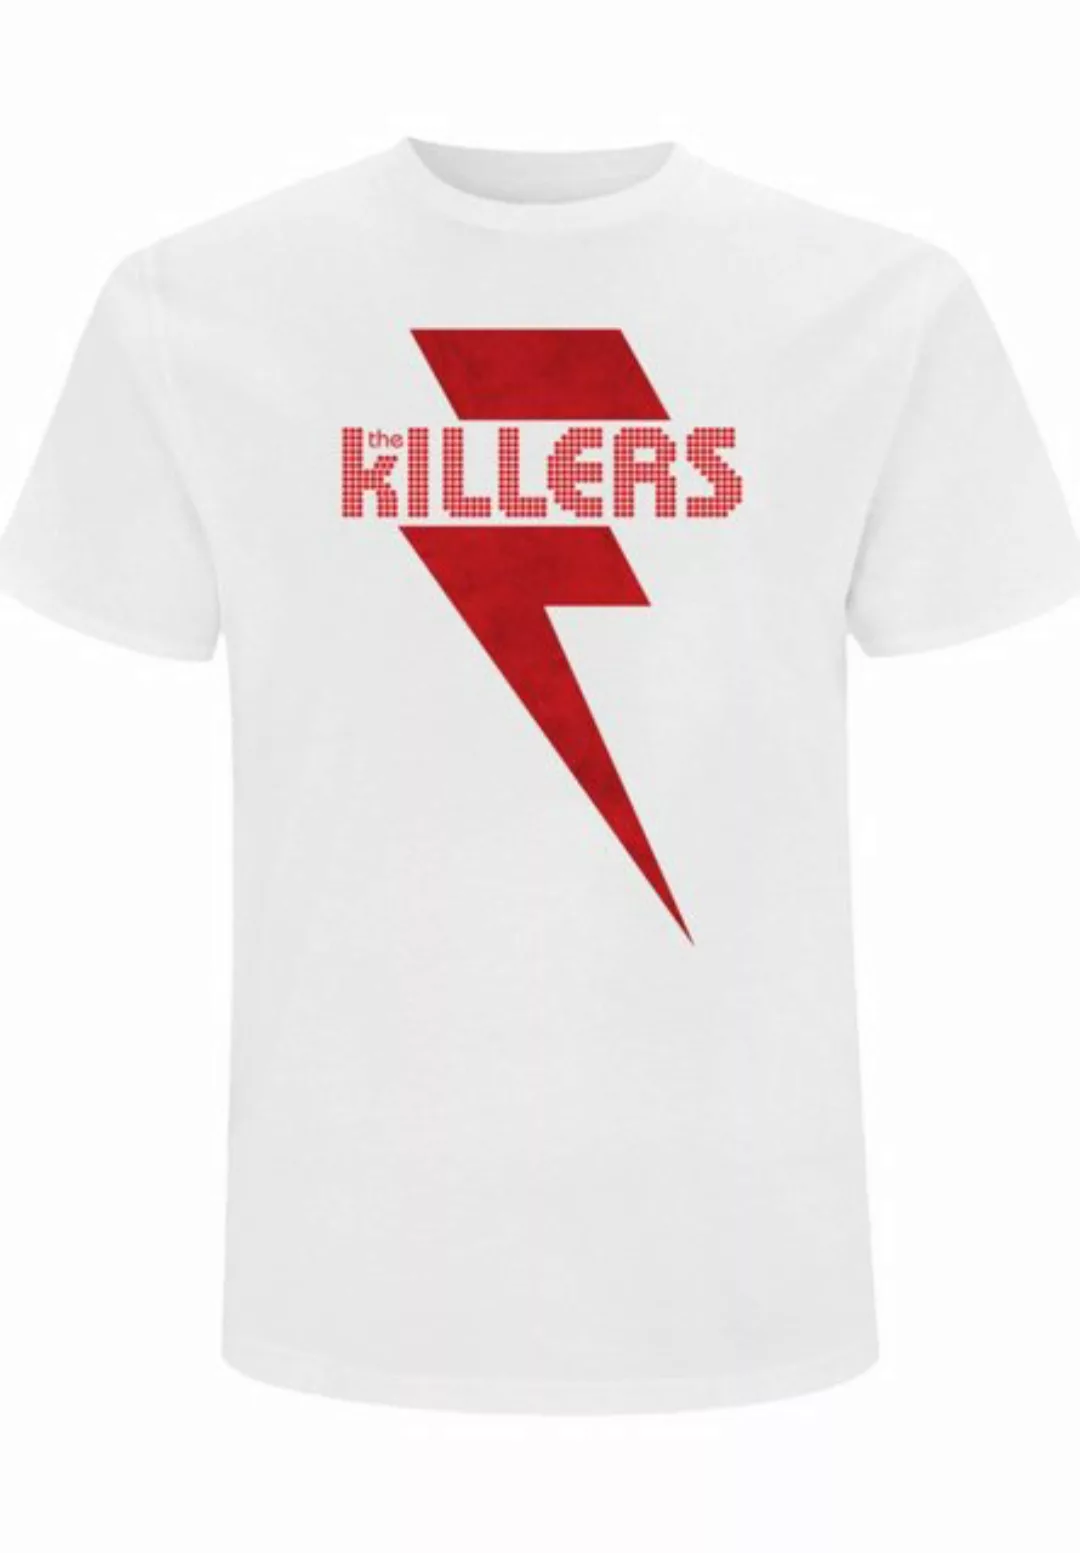 F4NT4STIC T-Shirt The Killers Red Bolt Print günstig online kaufen